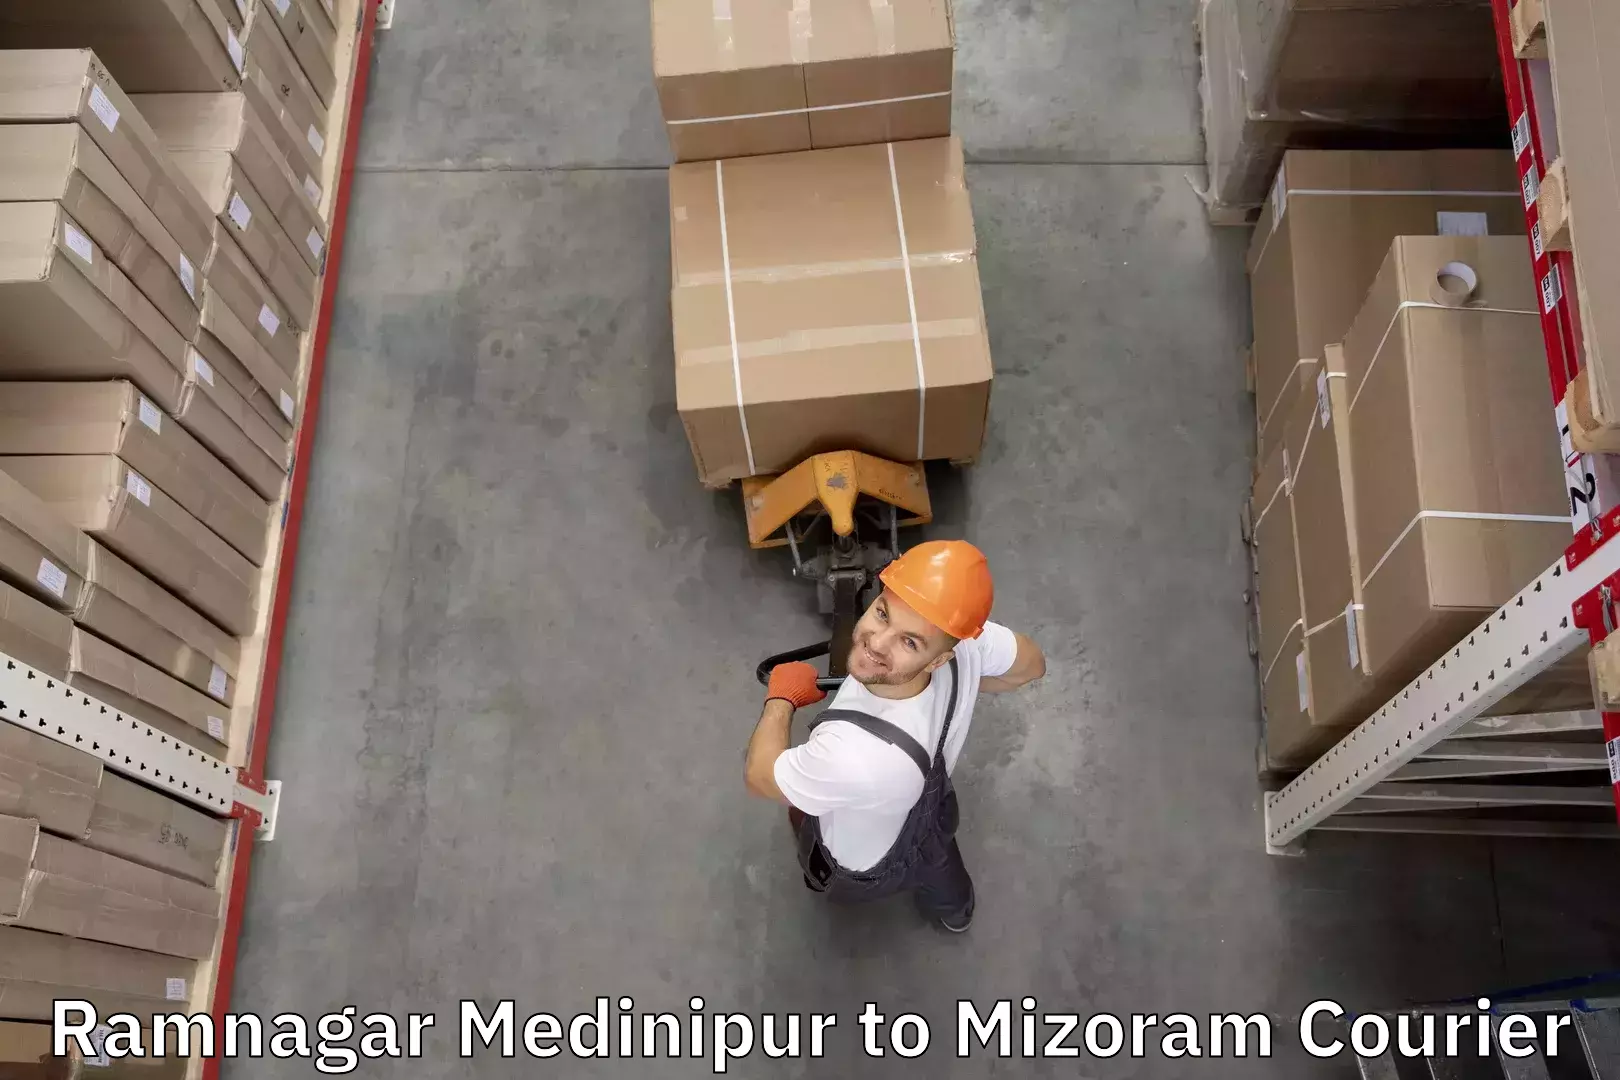 Baggage shipping calculator Ramnagar Medinipur to Mizoram